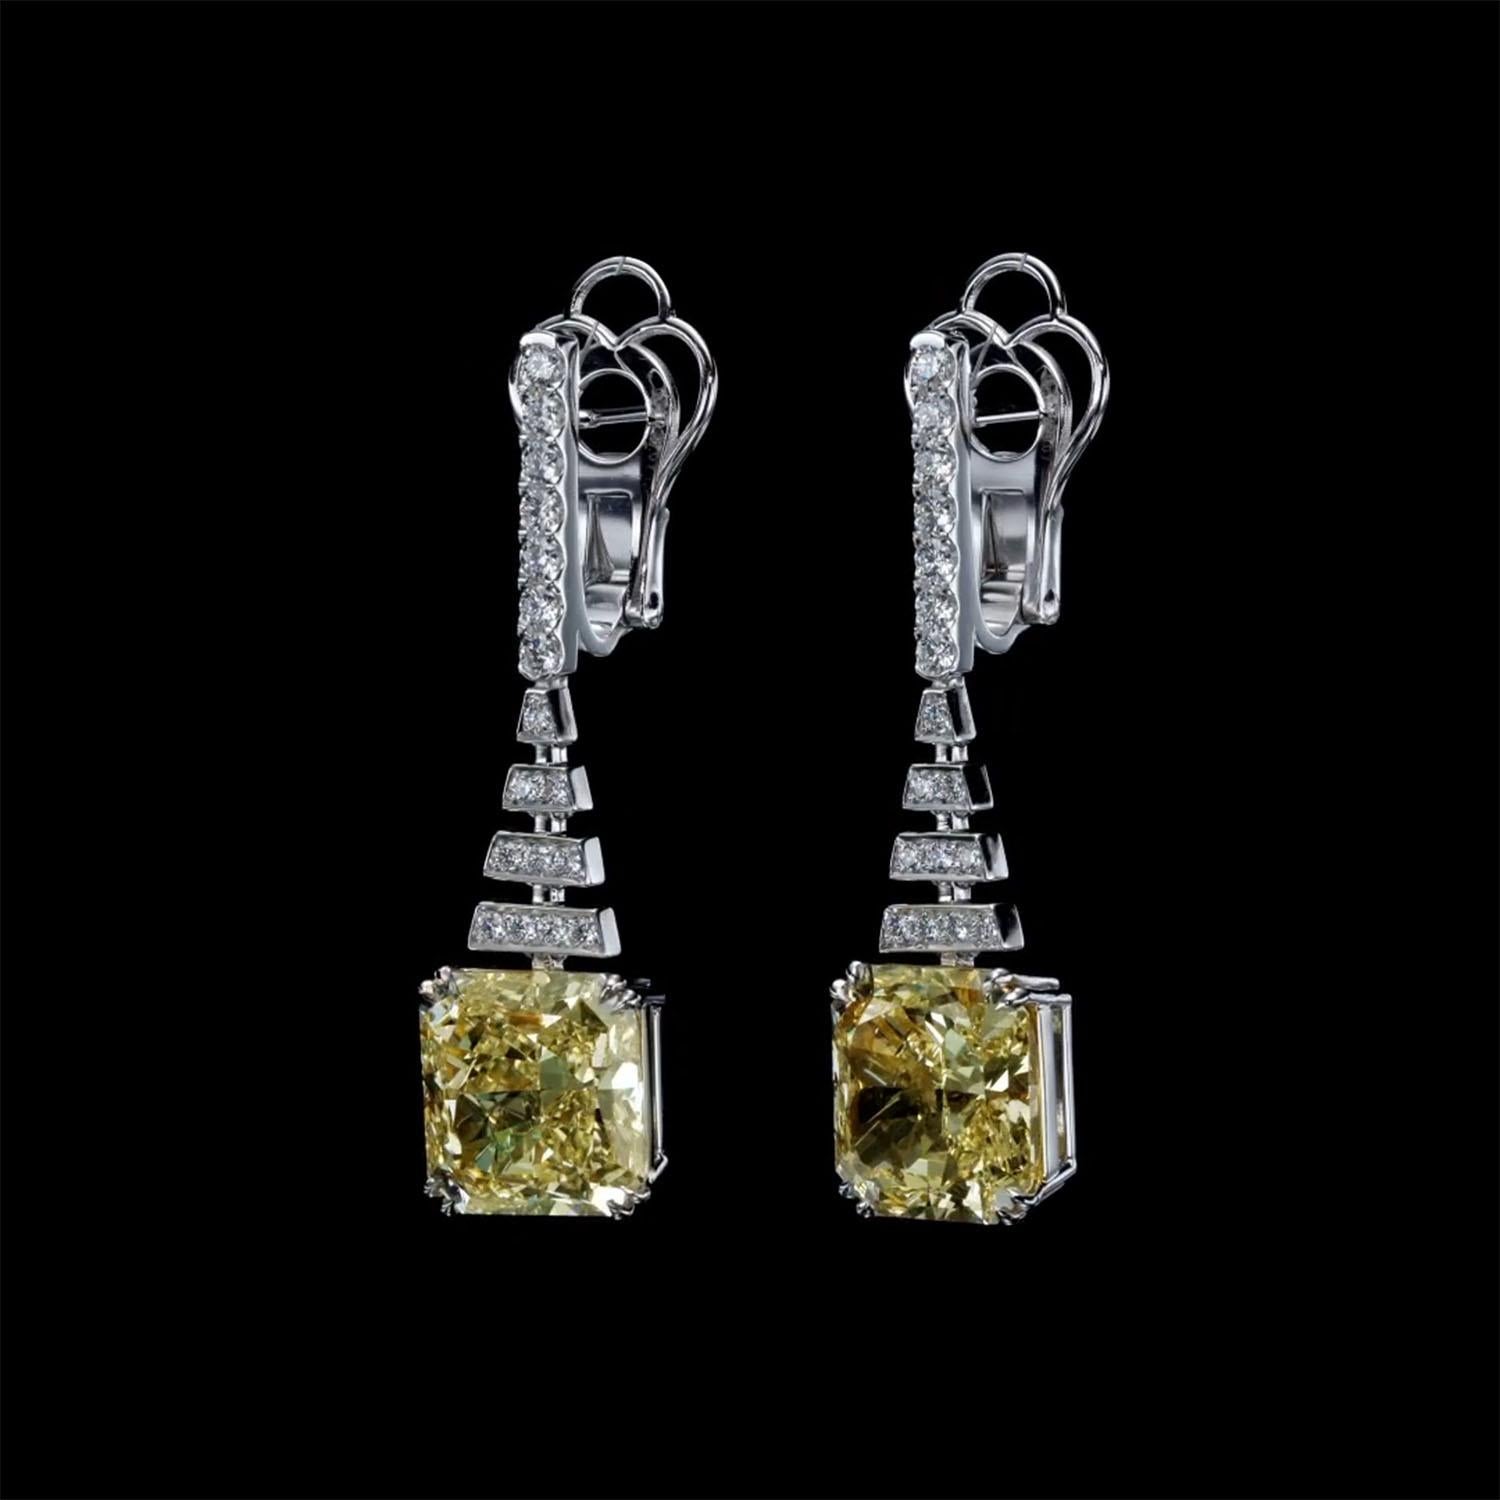 Radiant Cut Luxury 14.12 Carat Fancy Yellow Diamond Earrings, GIA, Drop Diamond Earrings For Sale